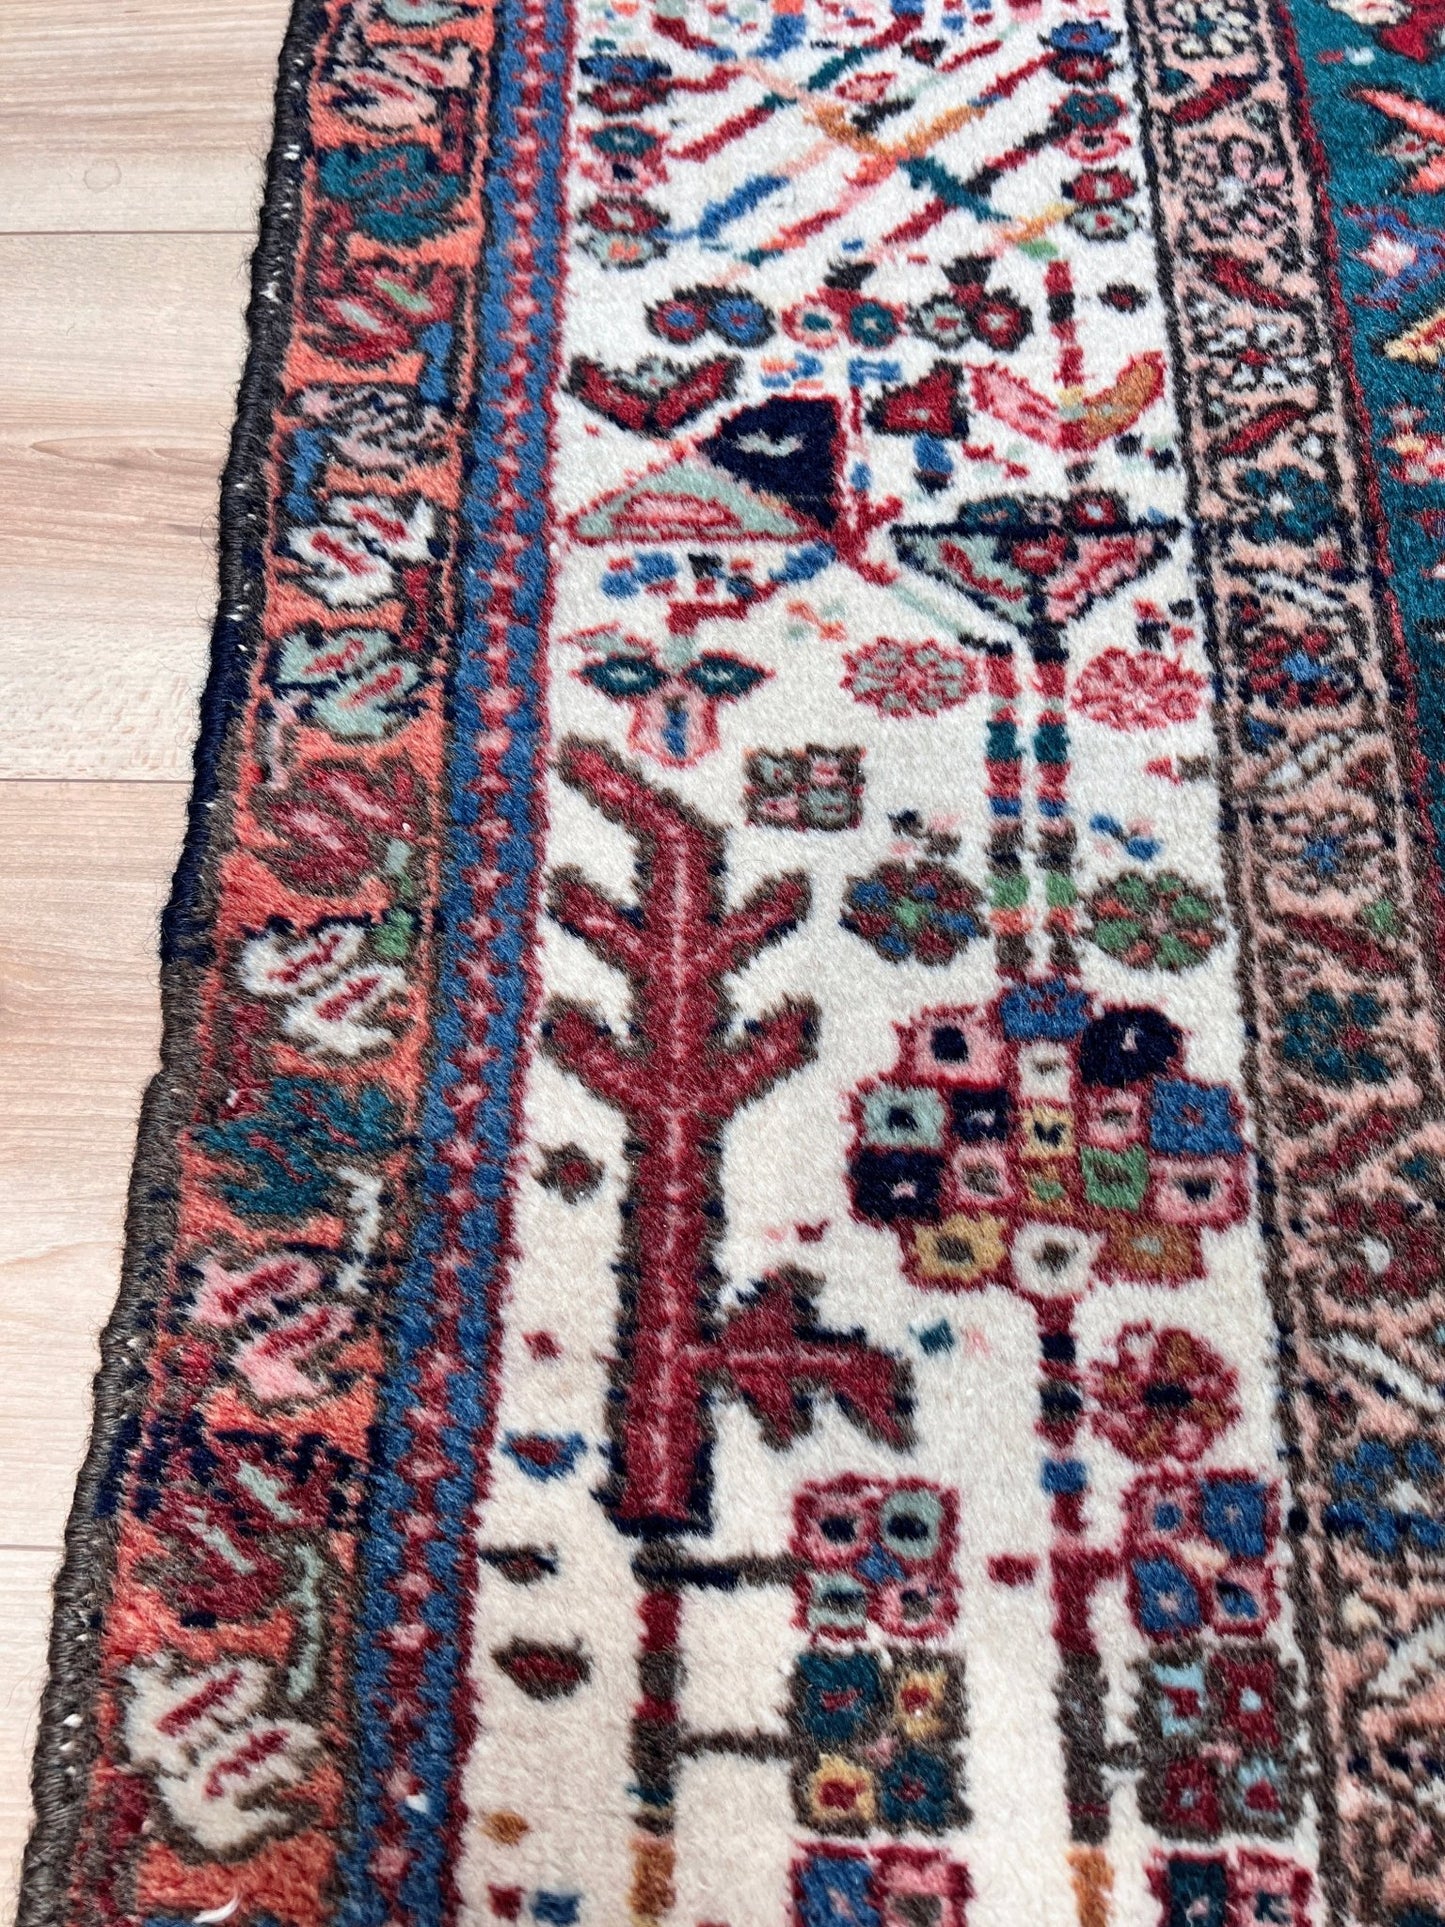 large karadja heriz persian aera rug. Oriental rug shop san francisco bay area. Buy handmade wool vintage rug online